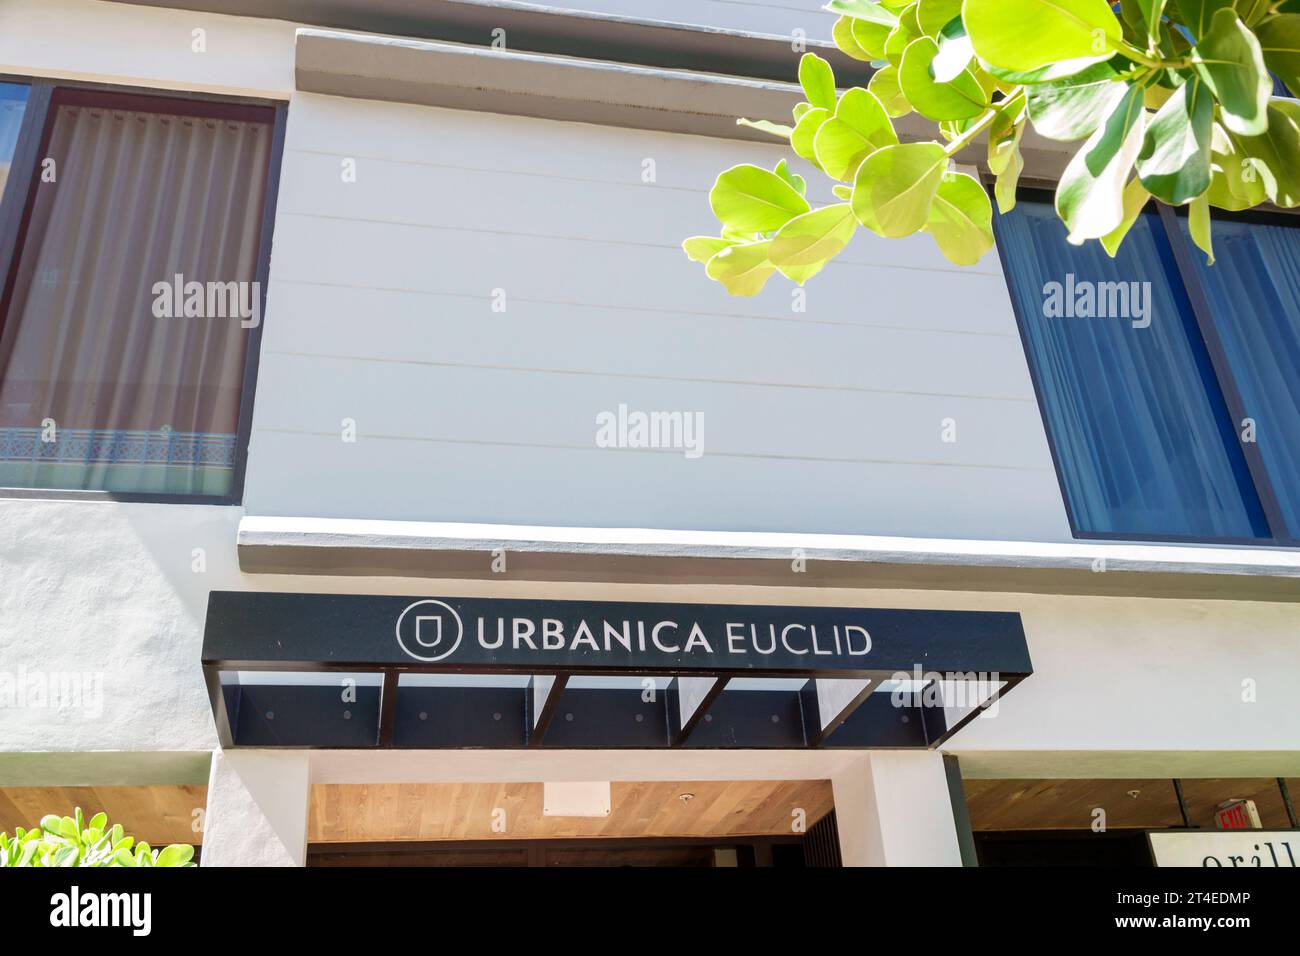 Miami Beach Floride, extérieur, hôtel entrée principale du bâtiment, enseigne Urbanica Euclid Hotel, hôtels motels entreprises Banque D'Images